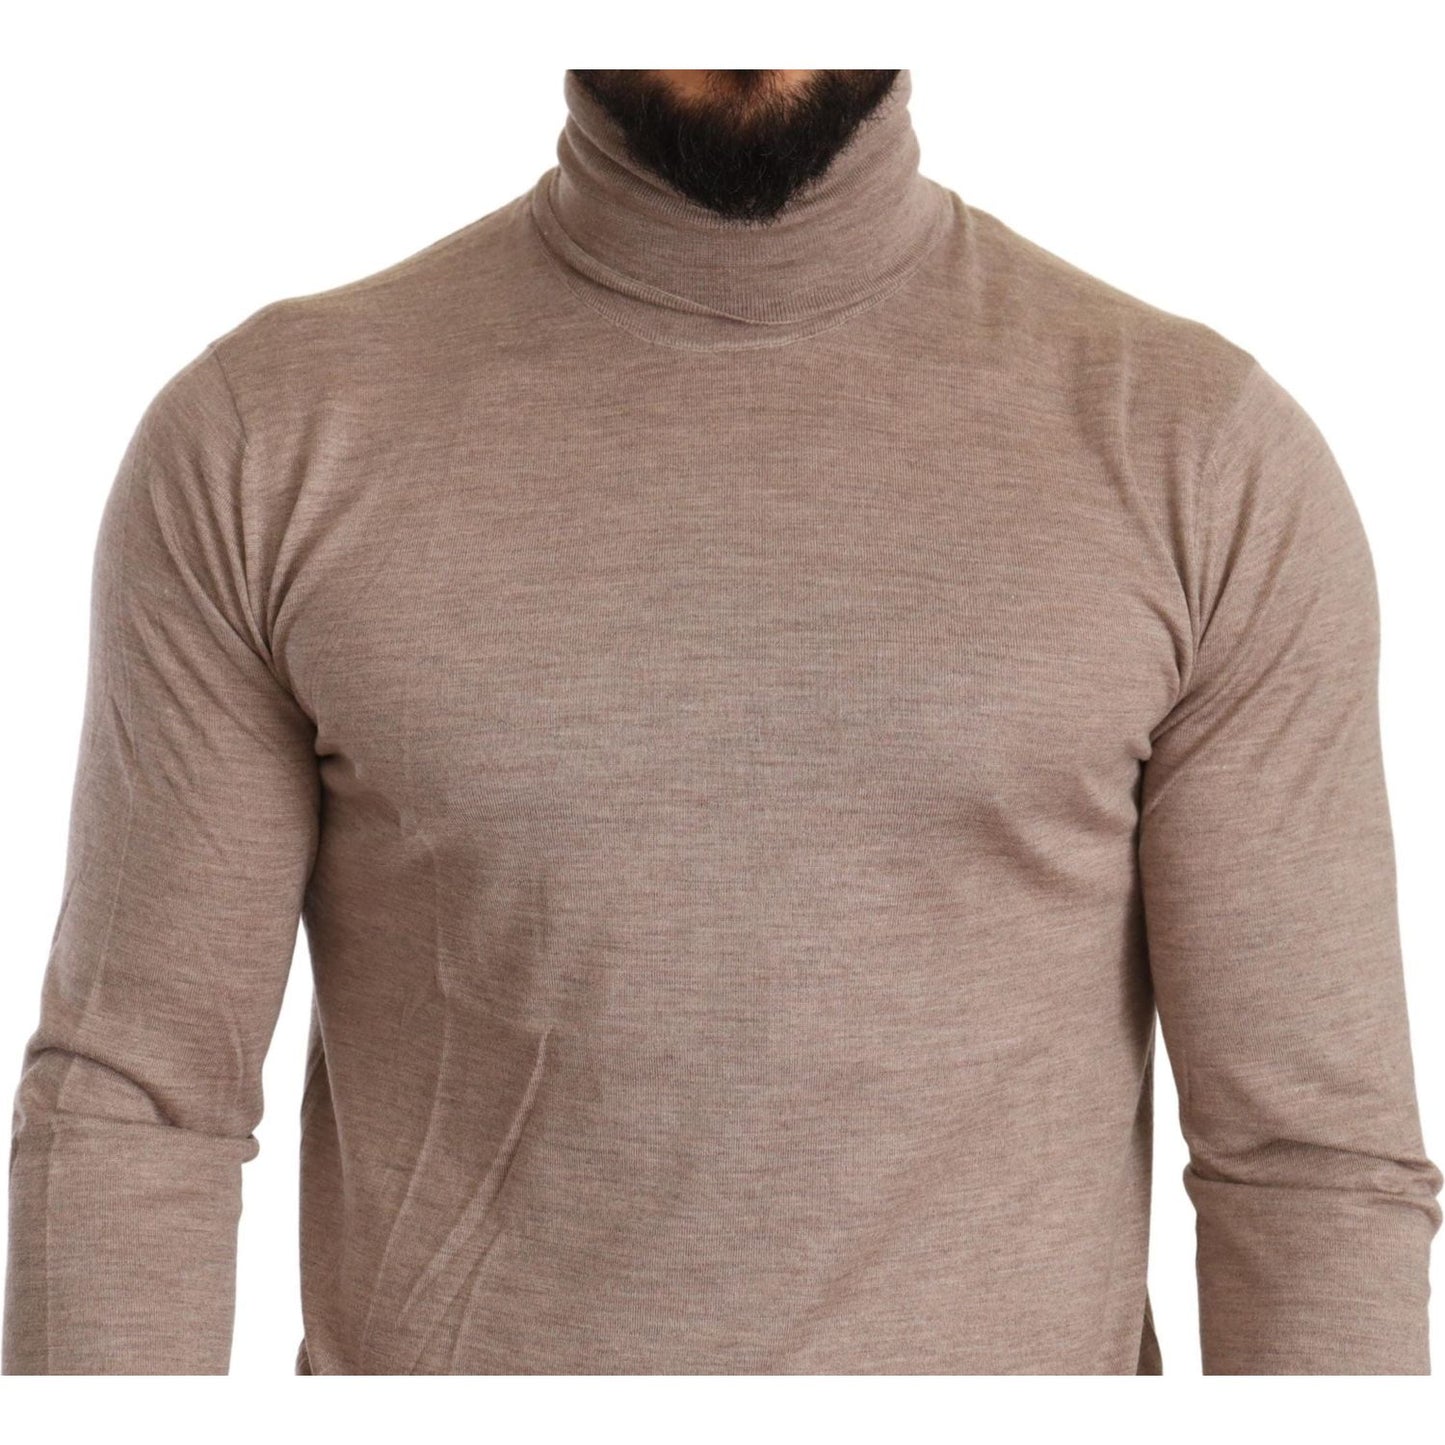 Dolce & Gabbana Beige Turtleneck Cashmere-Silk Blend Sweater beige-cashmere-turtleneck-pullover-sweater